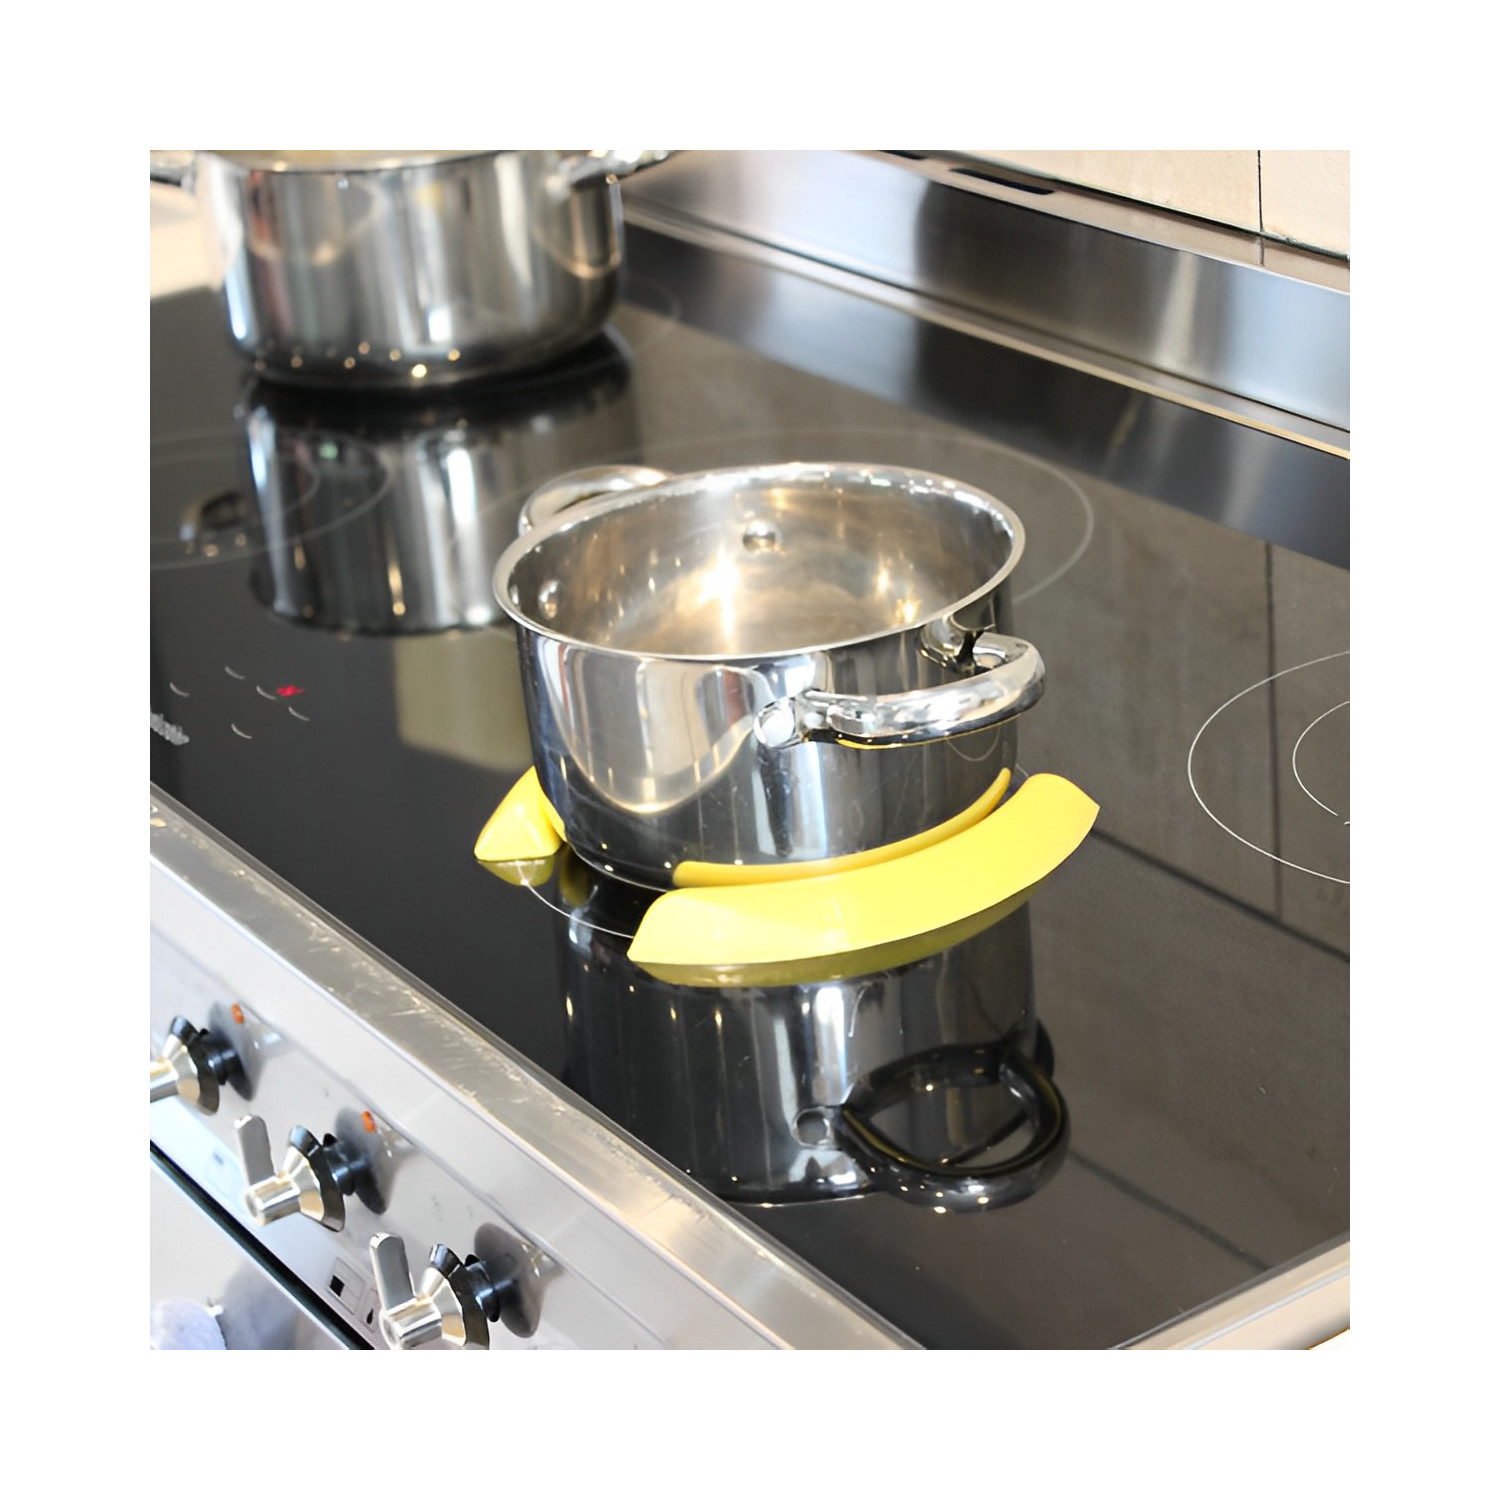 Découvrez le guide à casserole pour plaque à induction pratique et  réutilisable